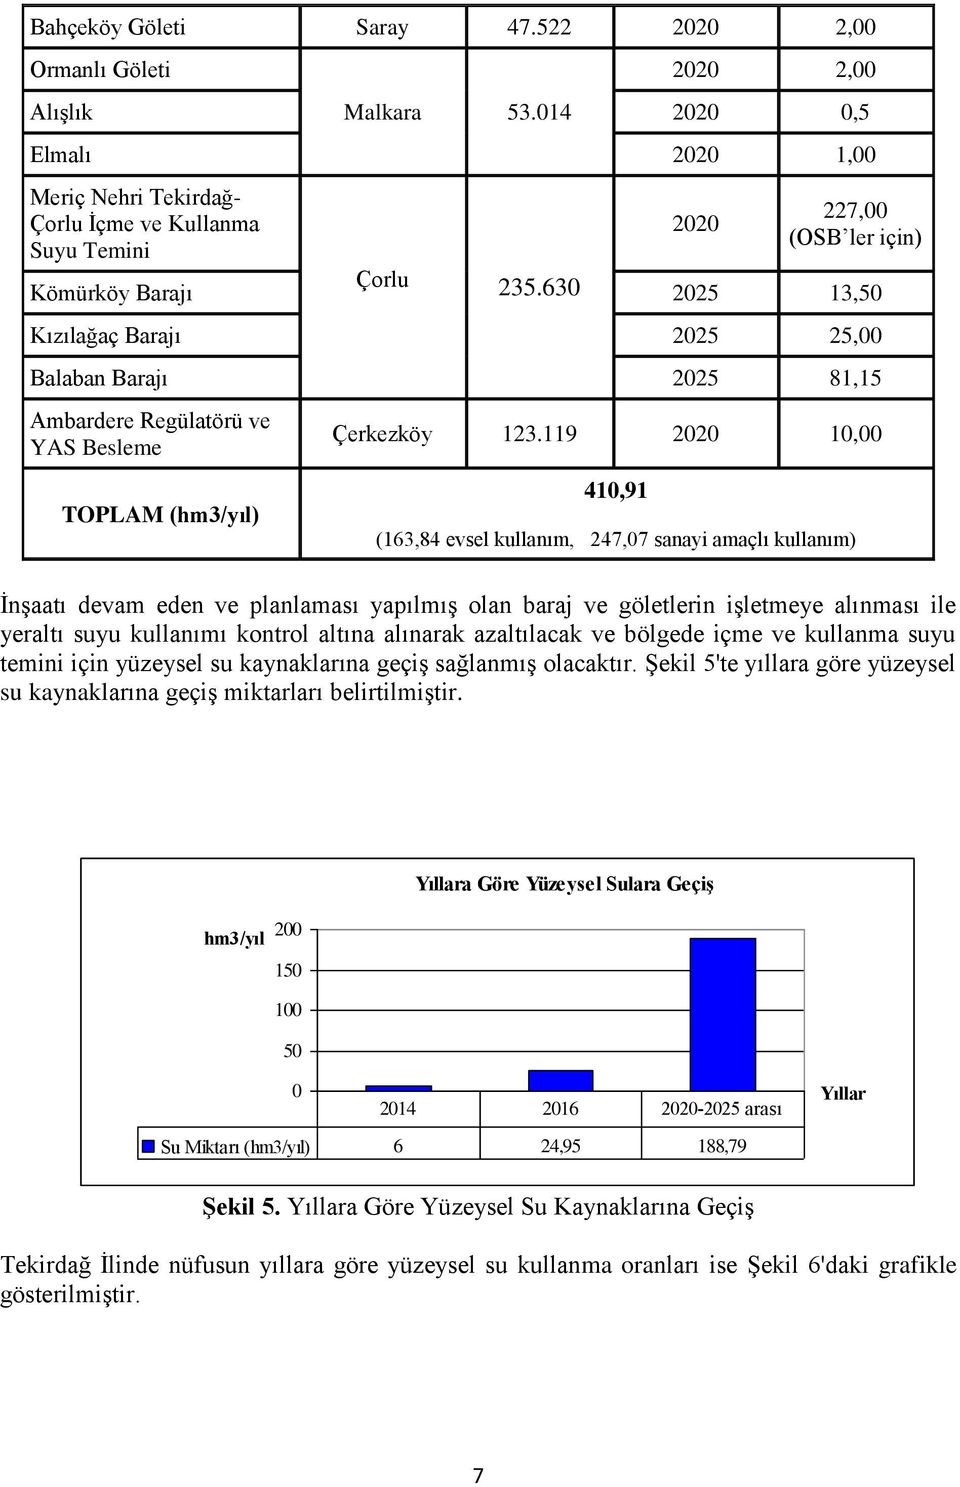 630 2025 13,50 Kızılağaç Barajı 2025 25,00 Balaban Barajı 2025 81,15 Ambardere Regülatörü ve YAS Besleme TOPLAM (hm3/yıl) Çerkezköy 123.